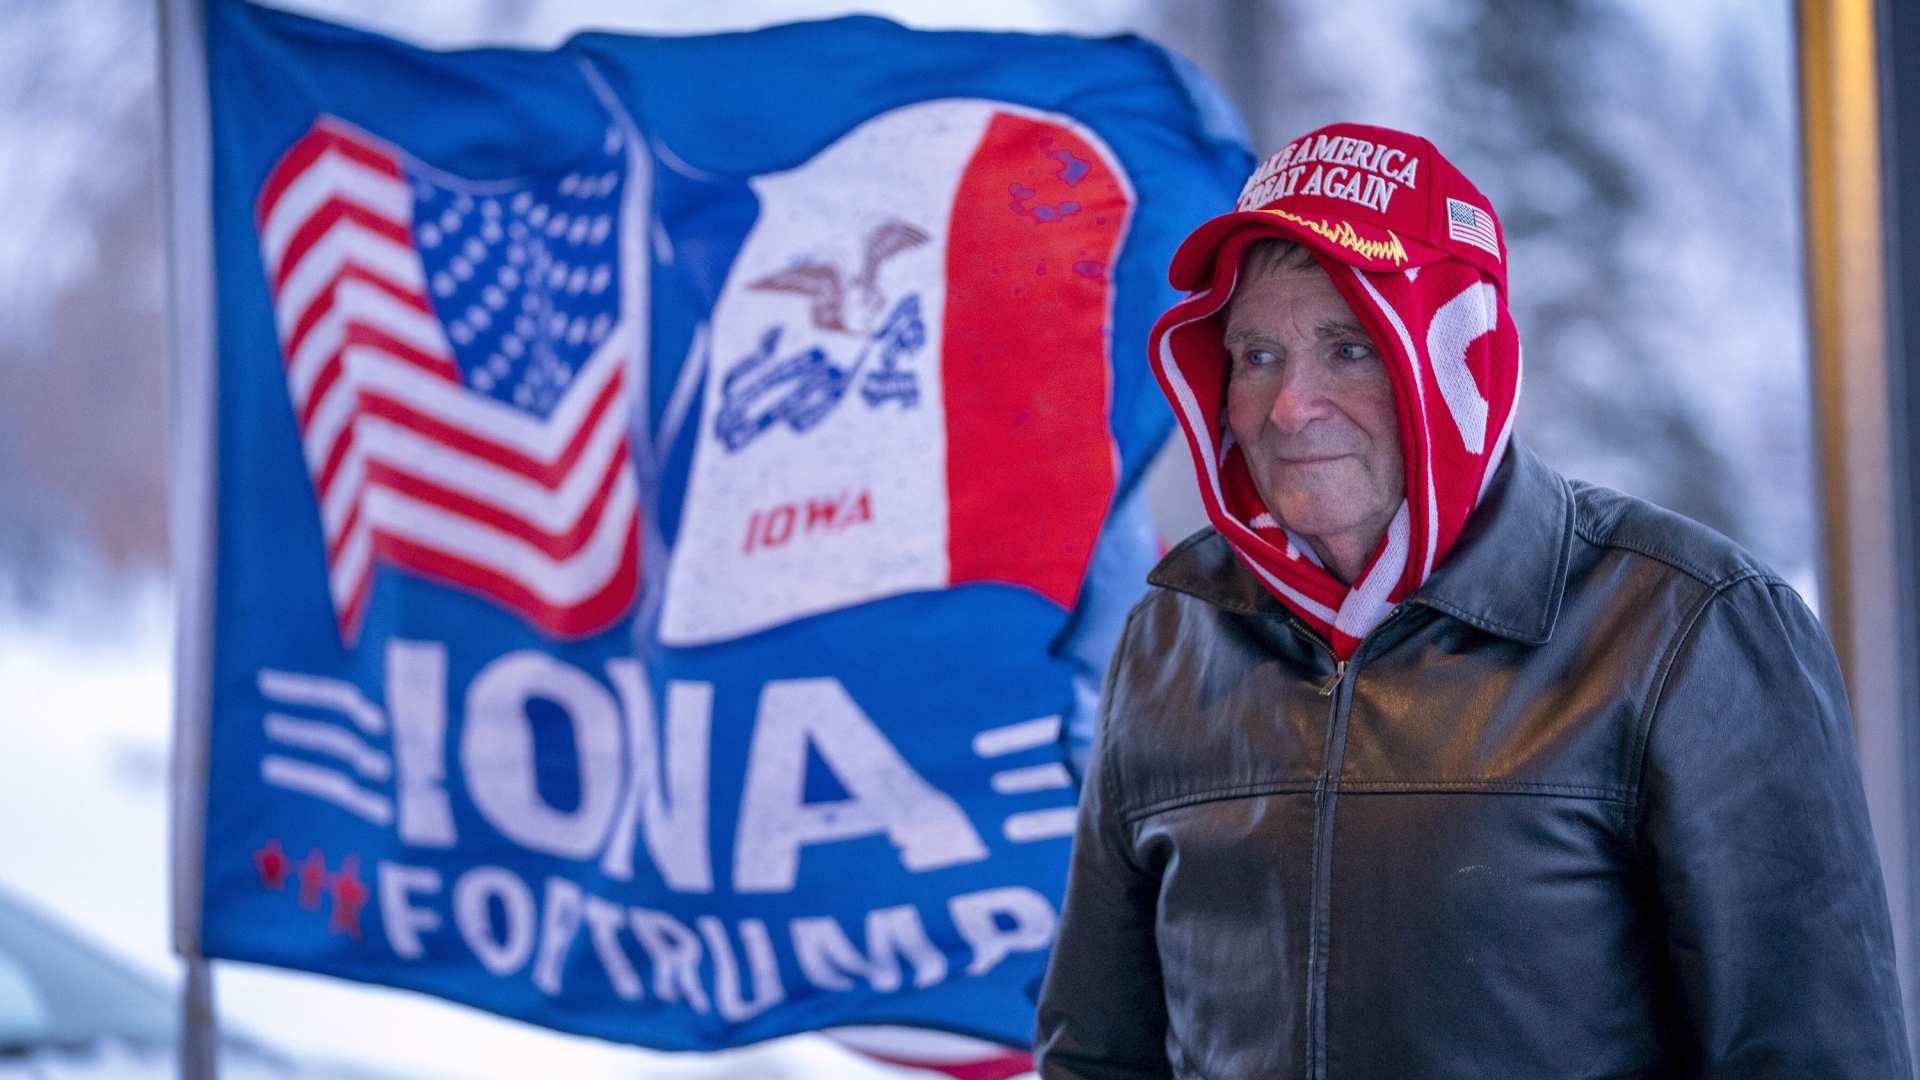 Mann neben einer "Iowa for Trump"-Fahne